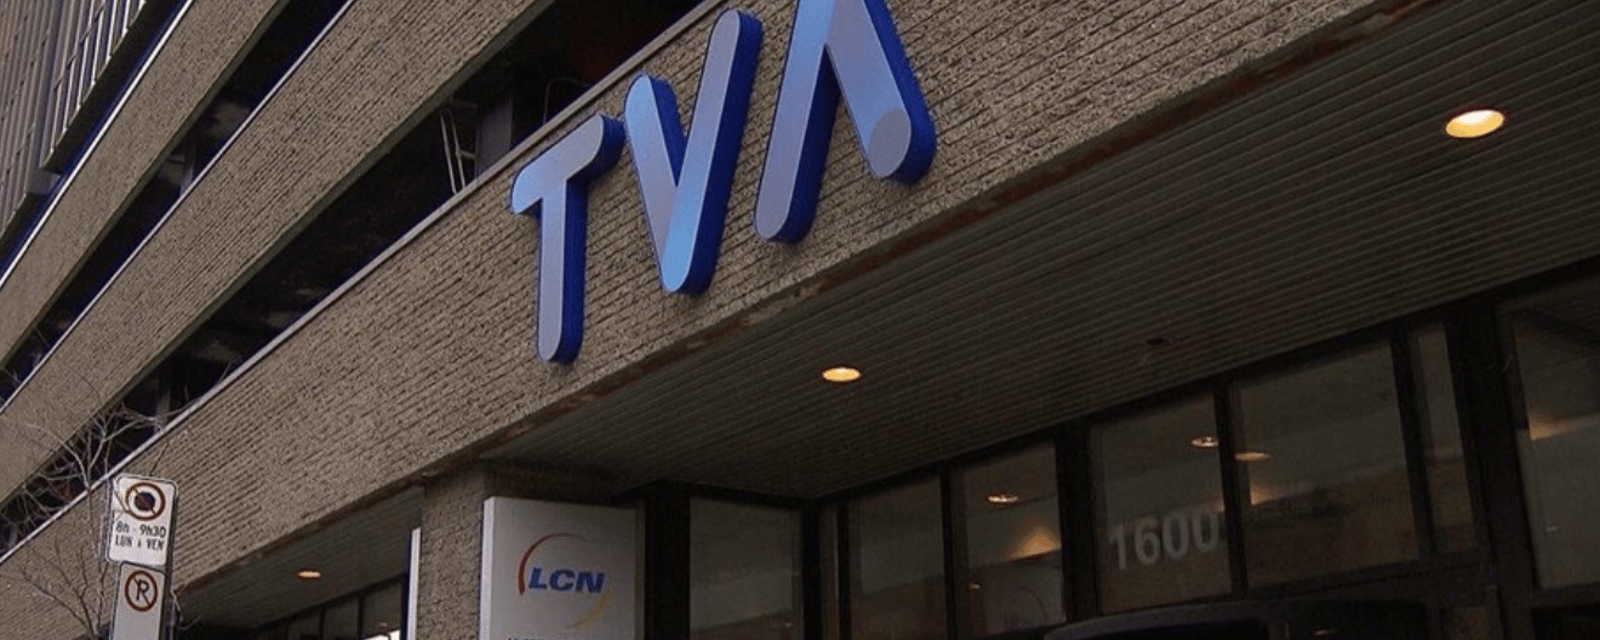 Groupe TVA abolit des centaines de postes suite à des résultats financiers difficiles